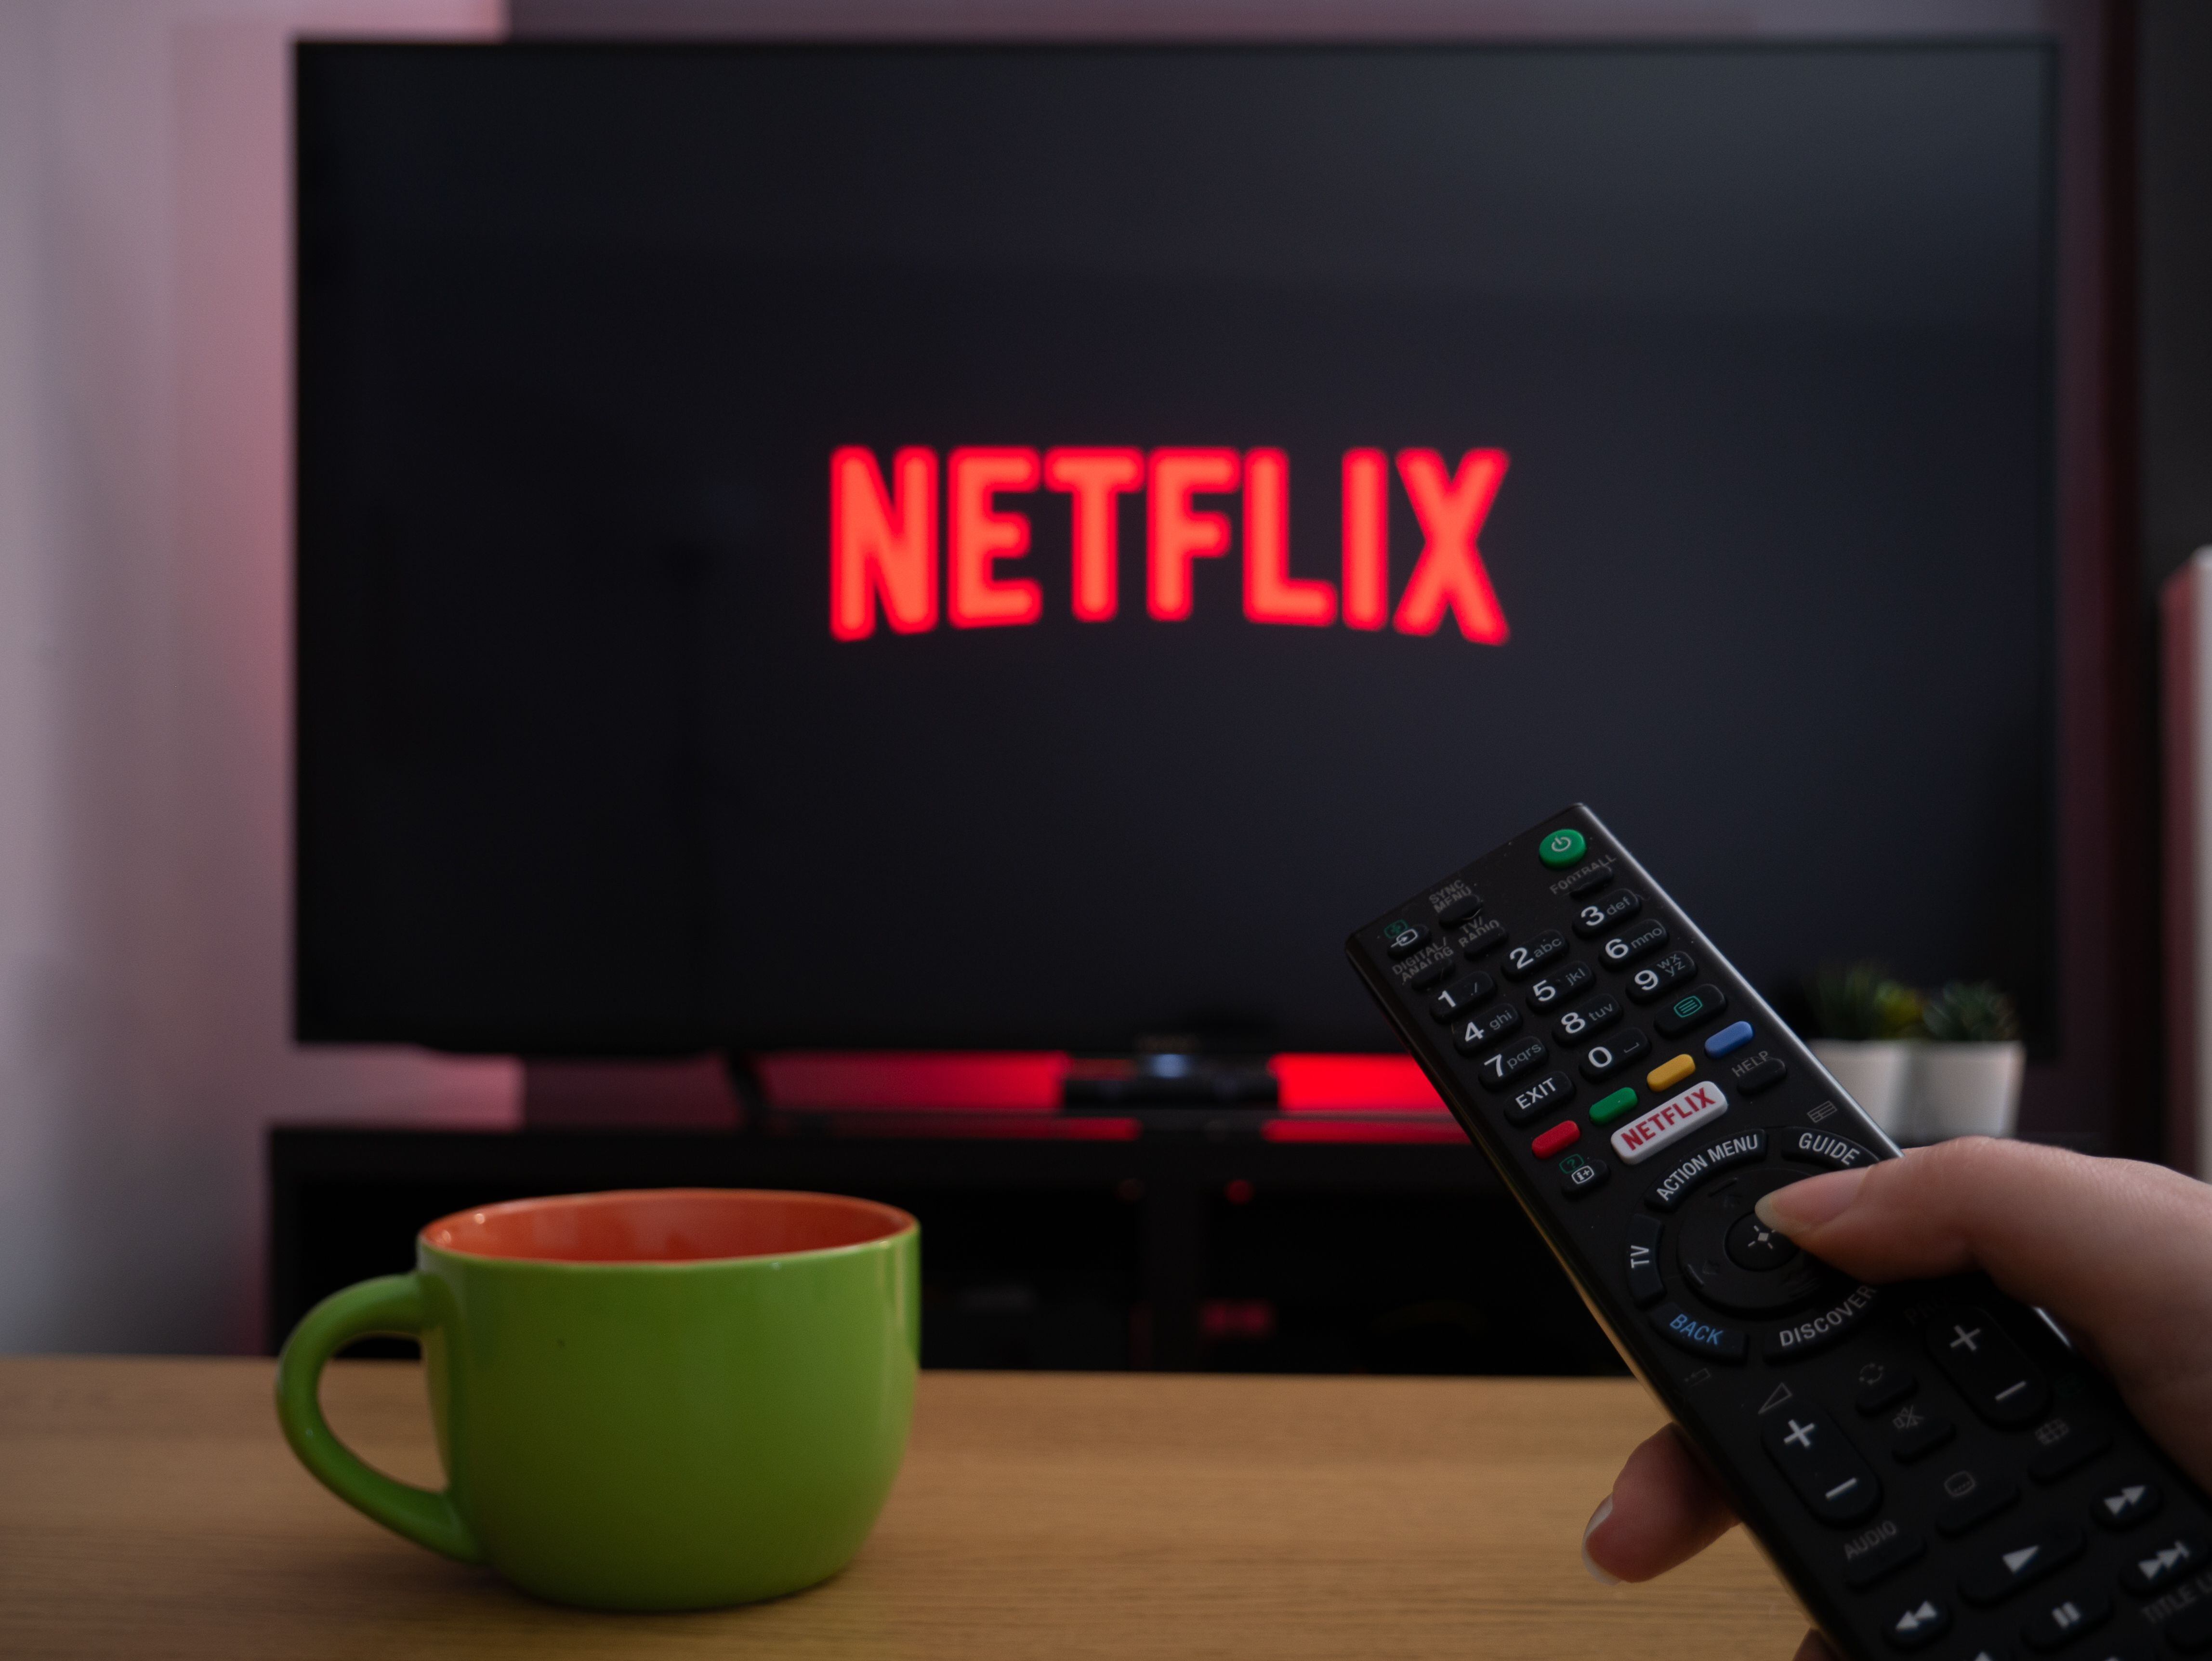 Sea por entretenimiento como en Netflix, o por servicios como mensajería y transporte, vivimos conectados a las apps. Foto: Shutterstock